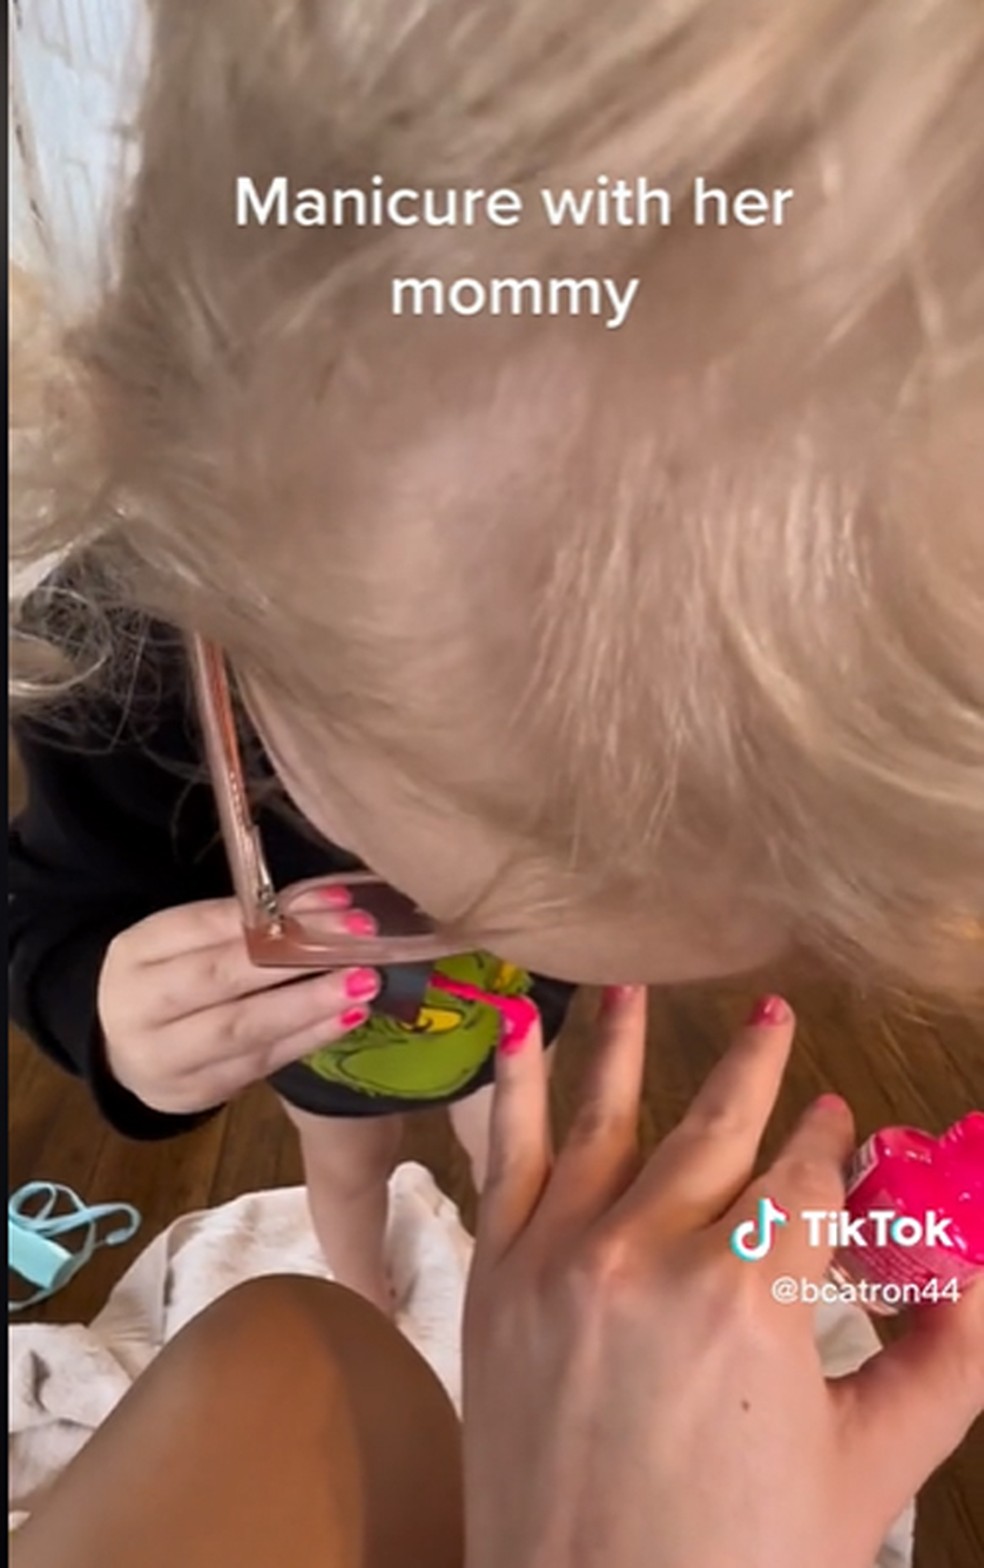 Menina de 3 anos encanta internet com fala cômica ao pintar a unha da mãe